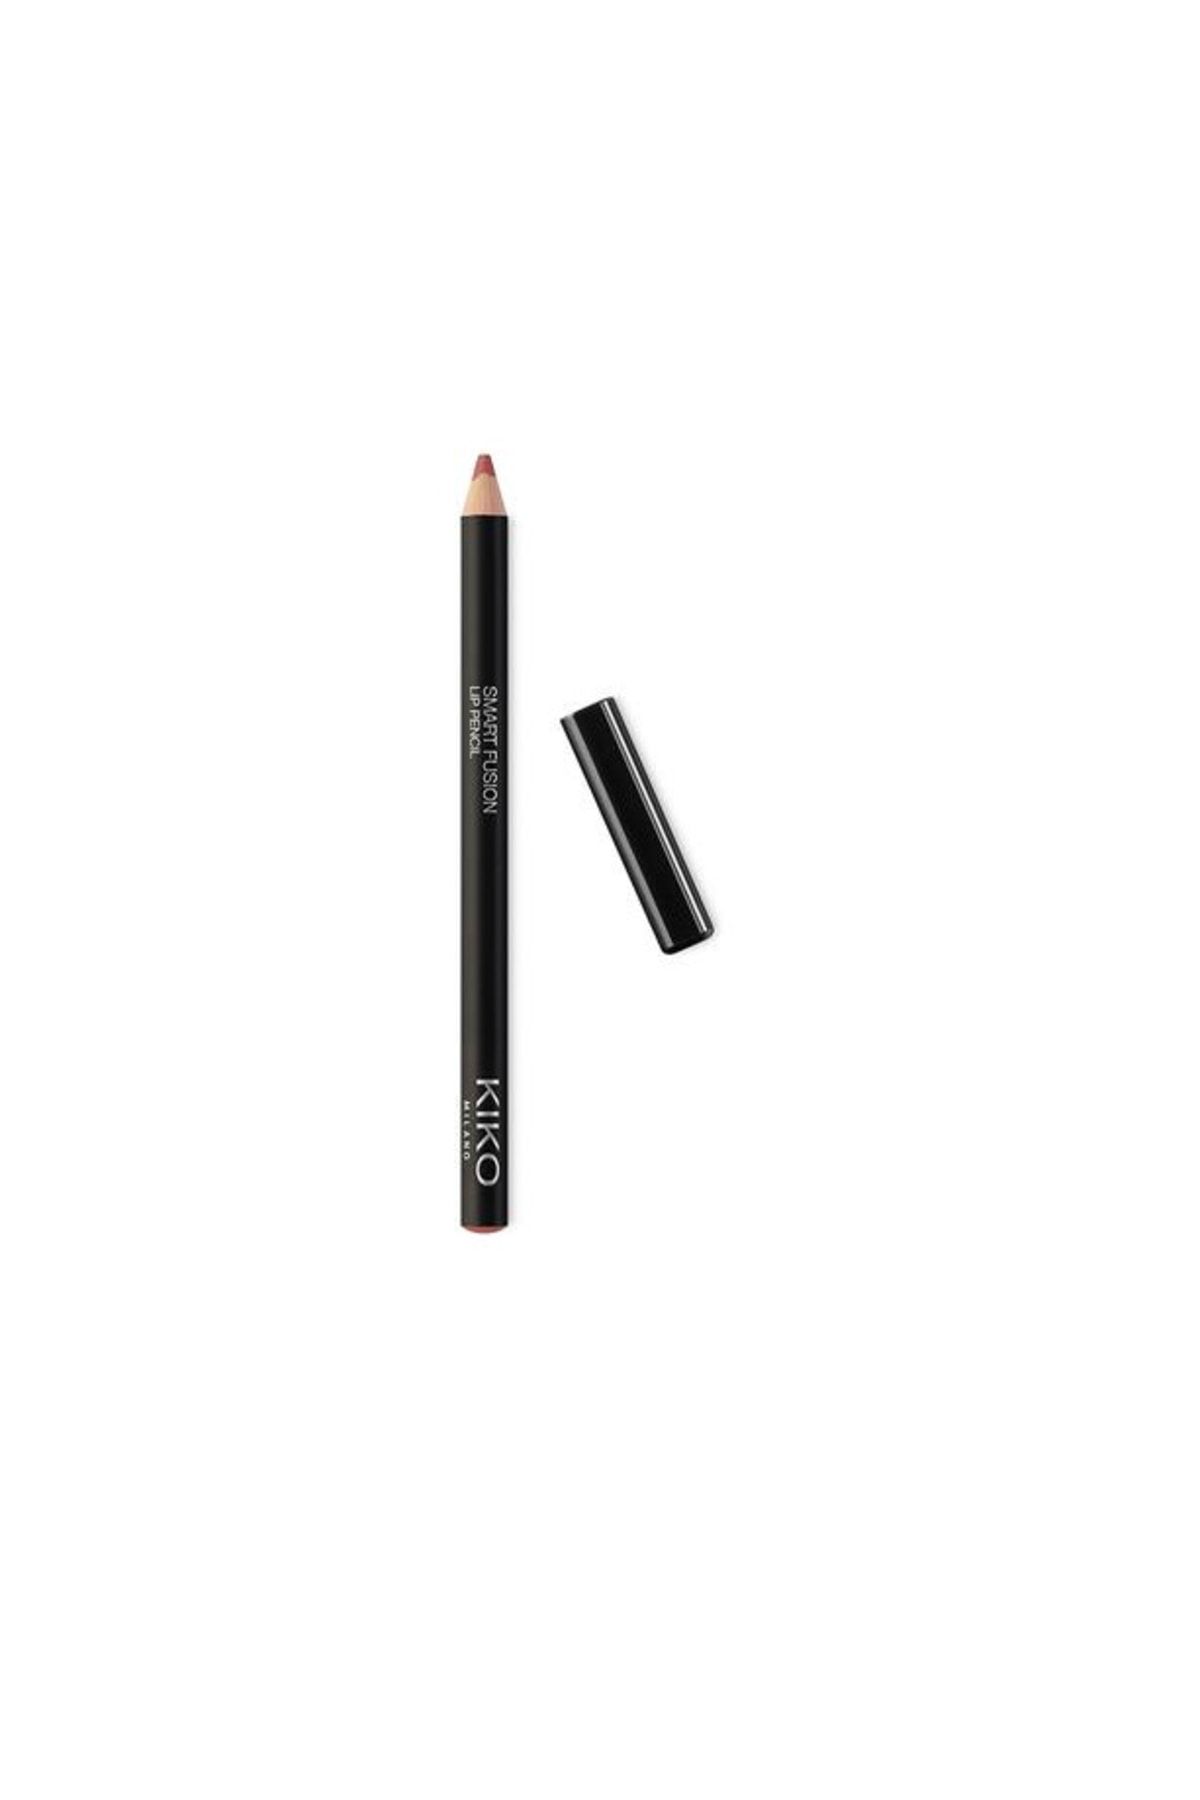 KIKO Smart Fusion Lip Pencil 534 Chestnut